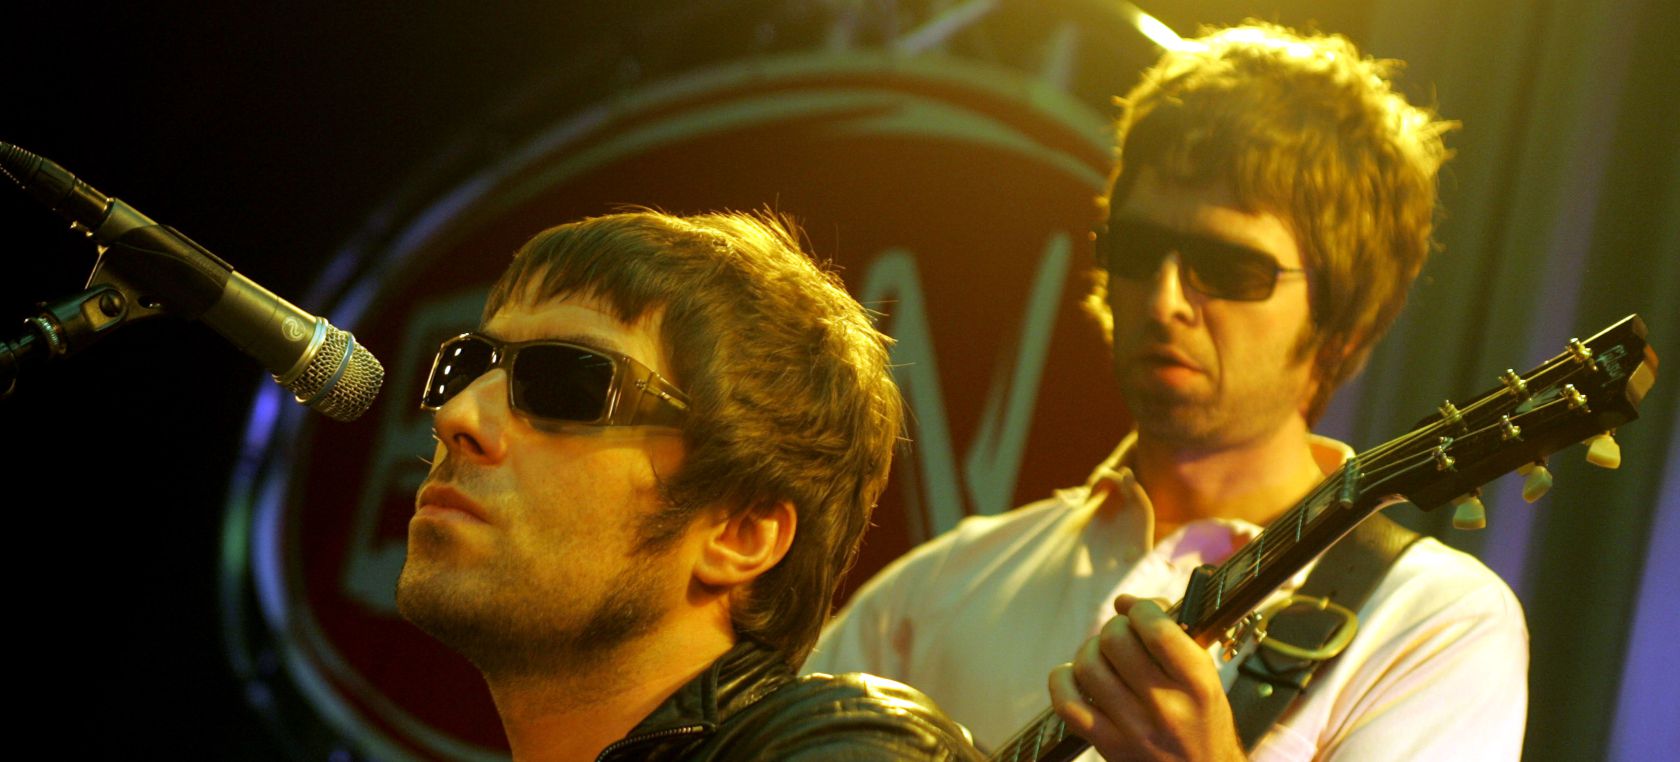 El verdadero significado de ‘Wonderwall’, la canción de Oasis que es un himno del ‘britpop’